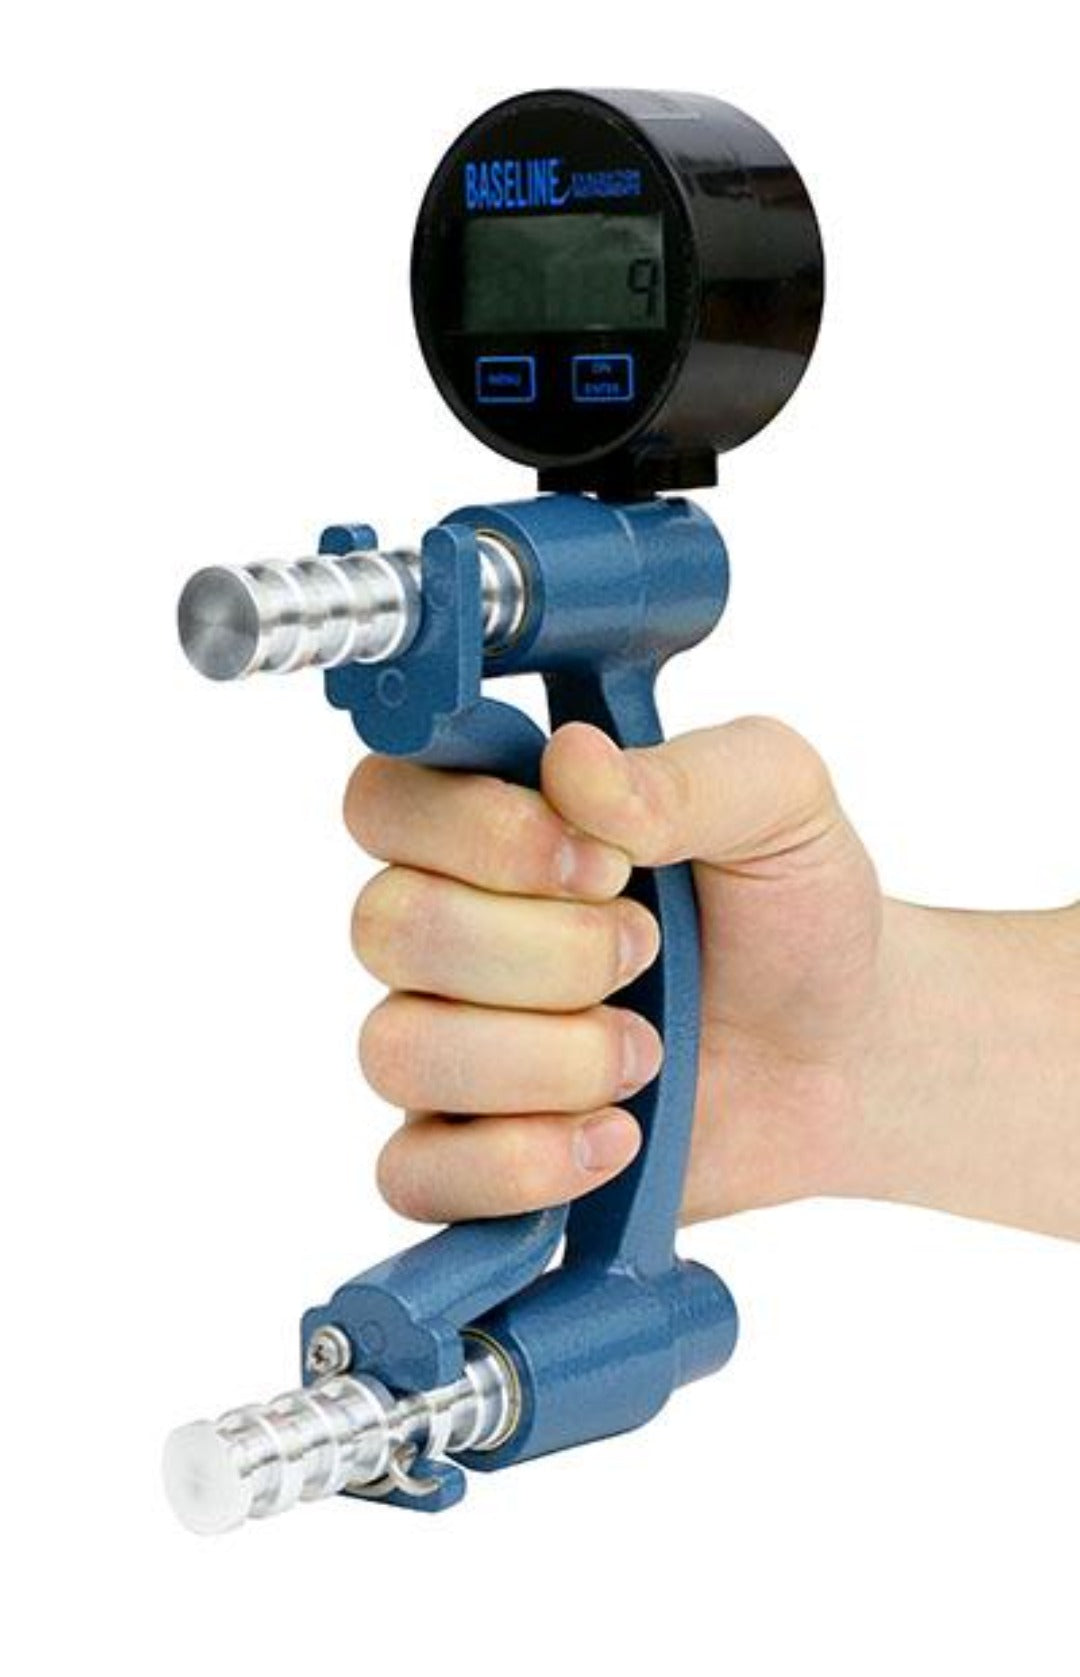 Baseline Hand Dynamometer - Digital LCD Gauge - ER™ 300 lb Capacity - Senior.com Strength Training Equipment